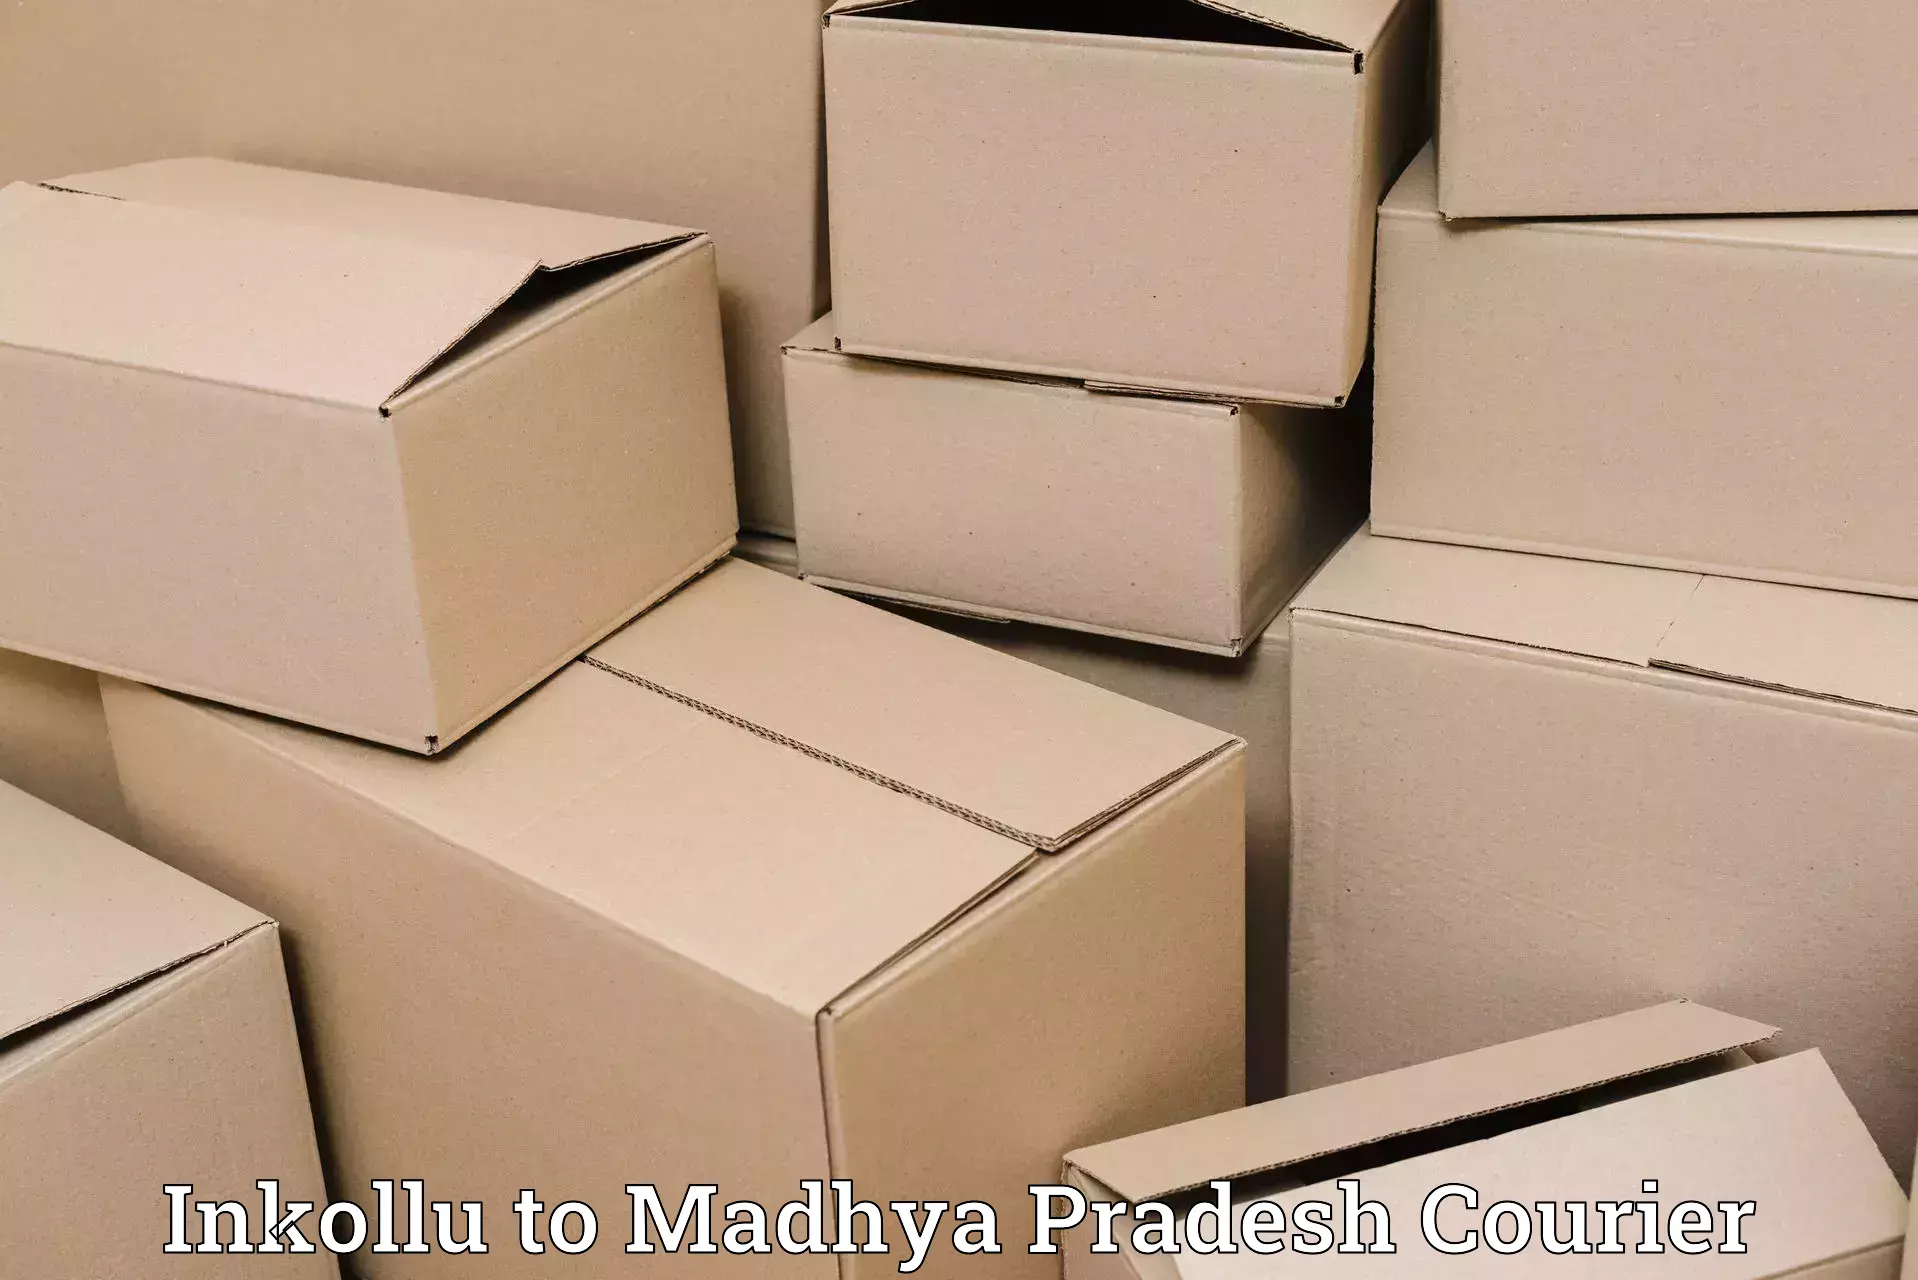 Door-to-door freight service Inkollu to Udaipura